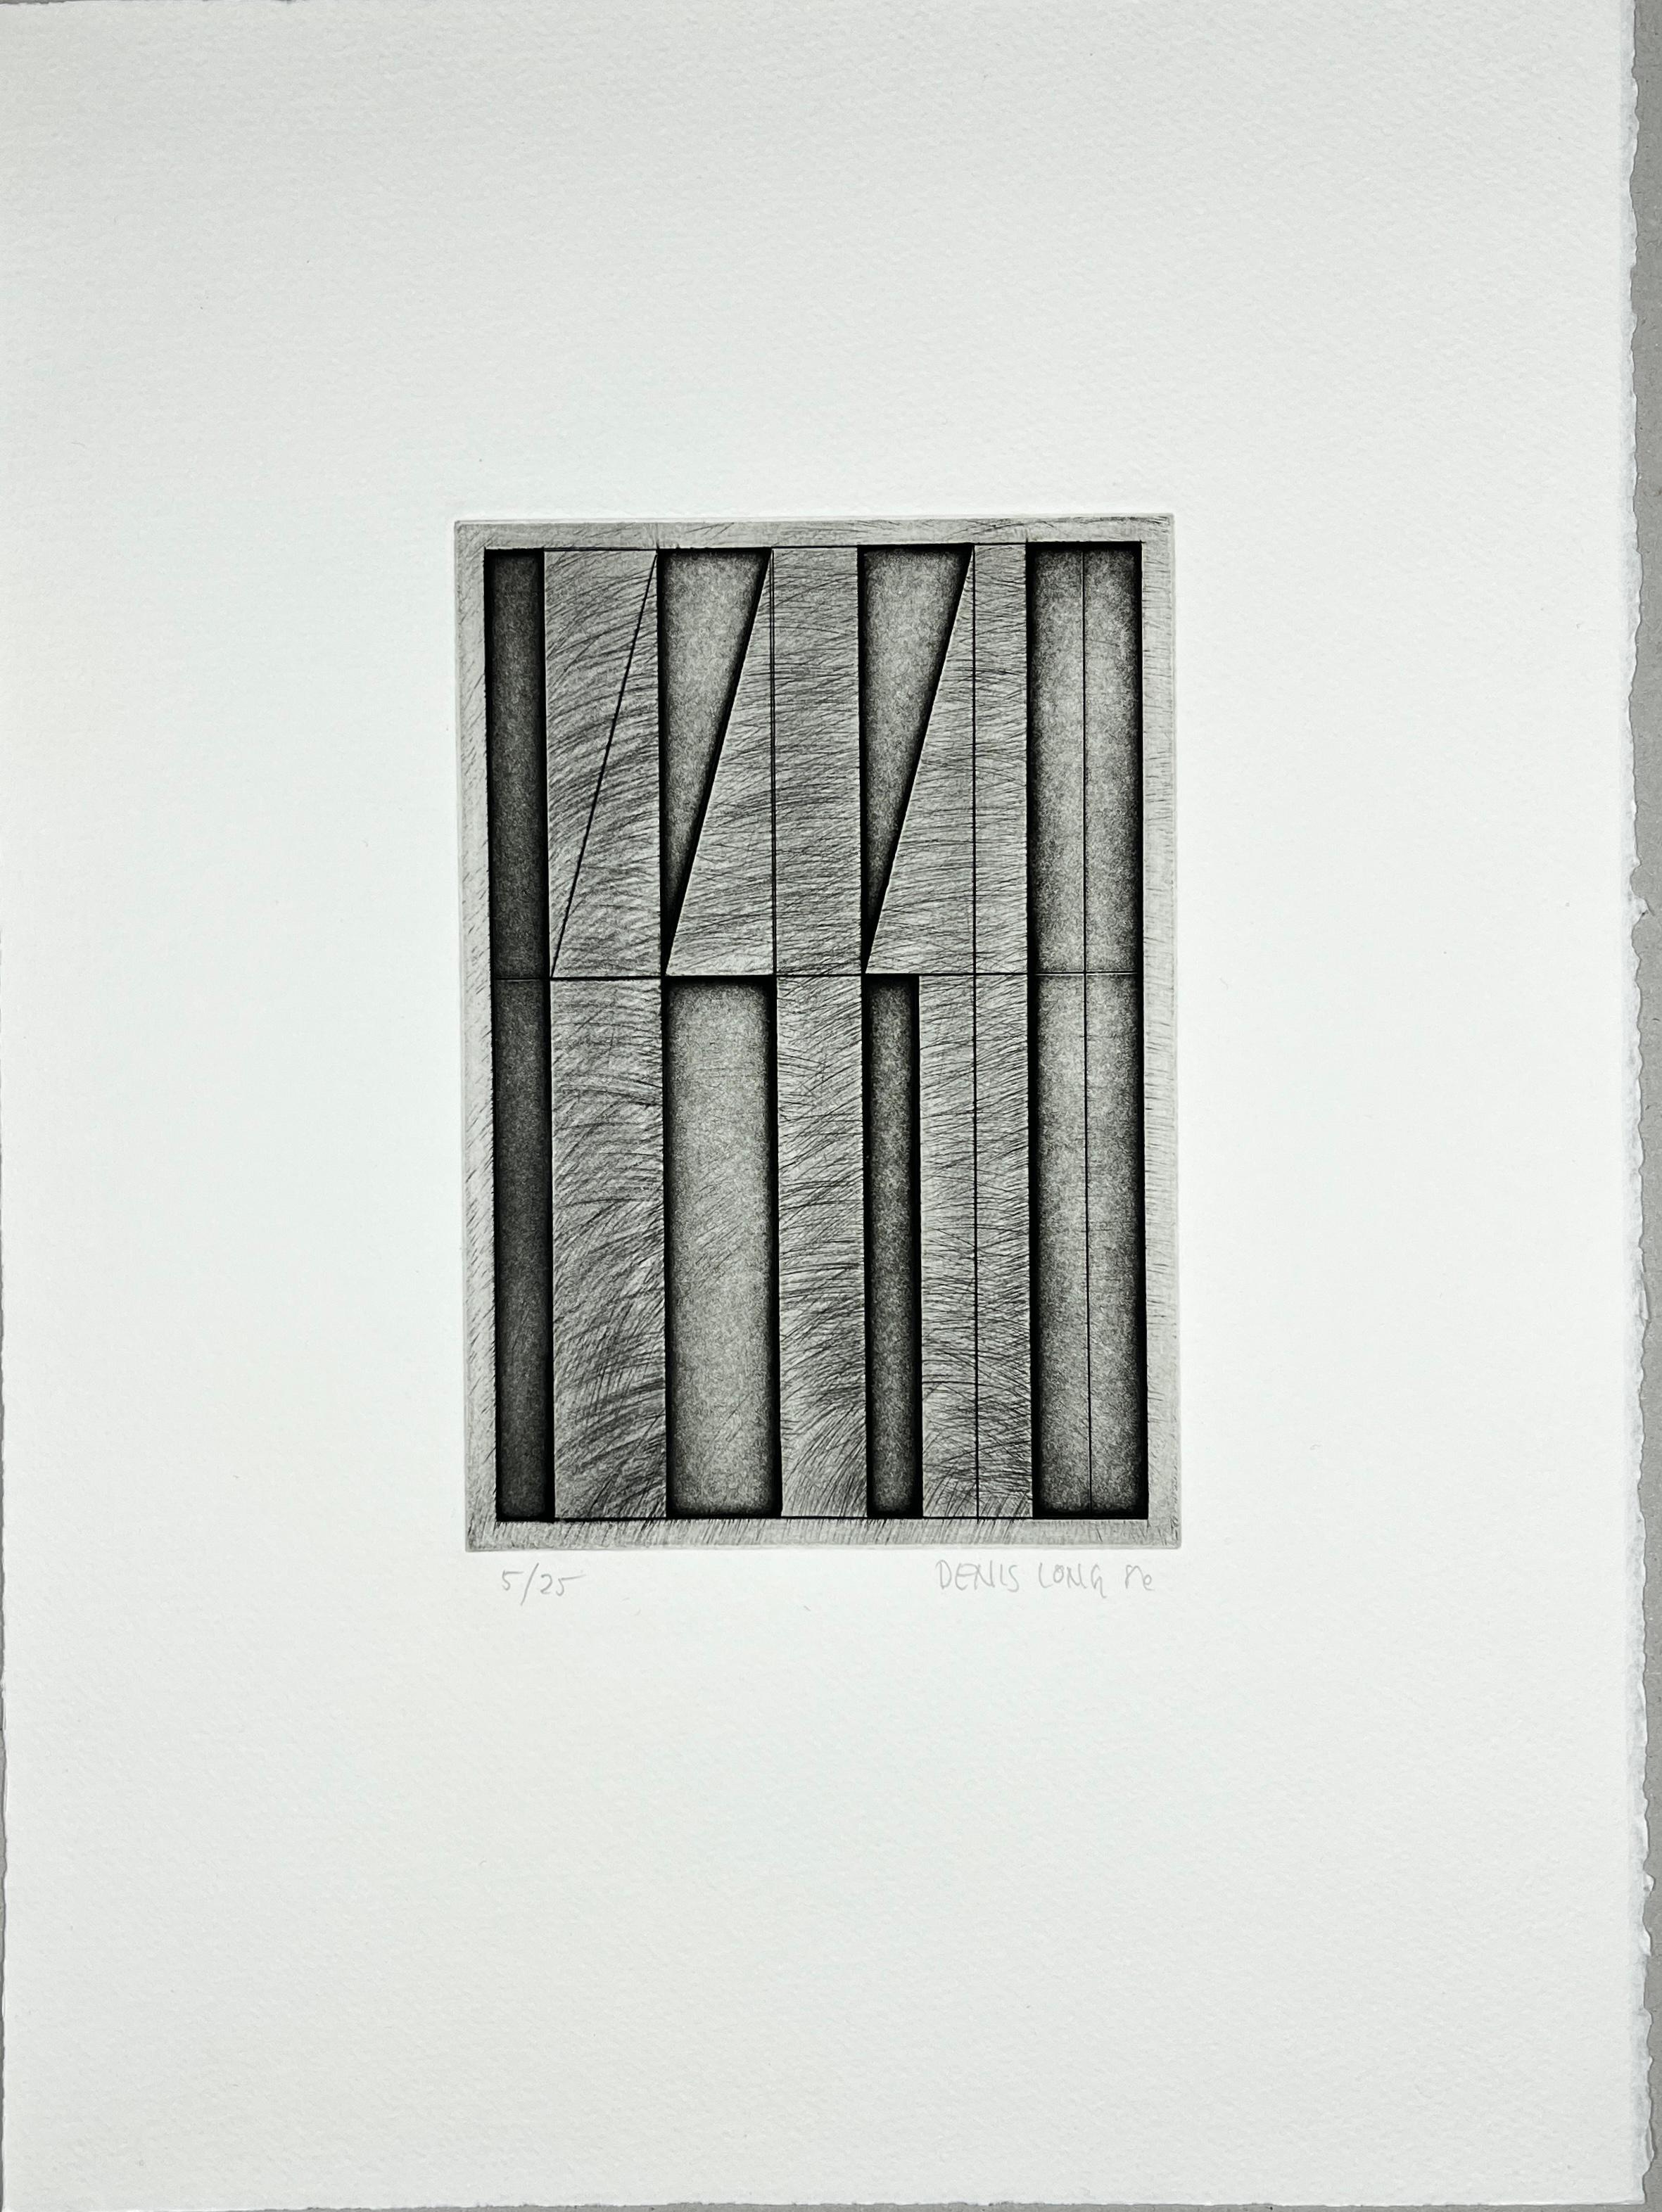 Denis Long Abstract Print – American 1986 signierter Original-Kunstdruck Radierung in limitierter Auflage  15x11 Zoll.